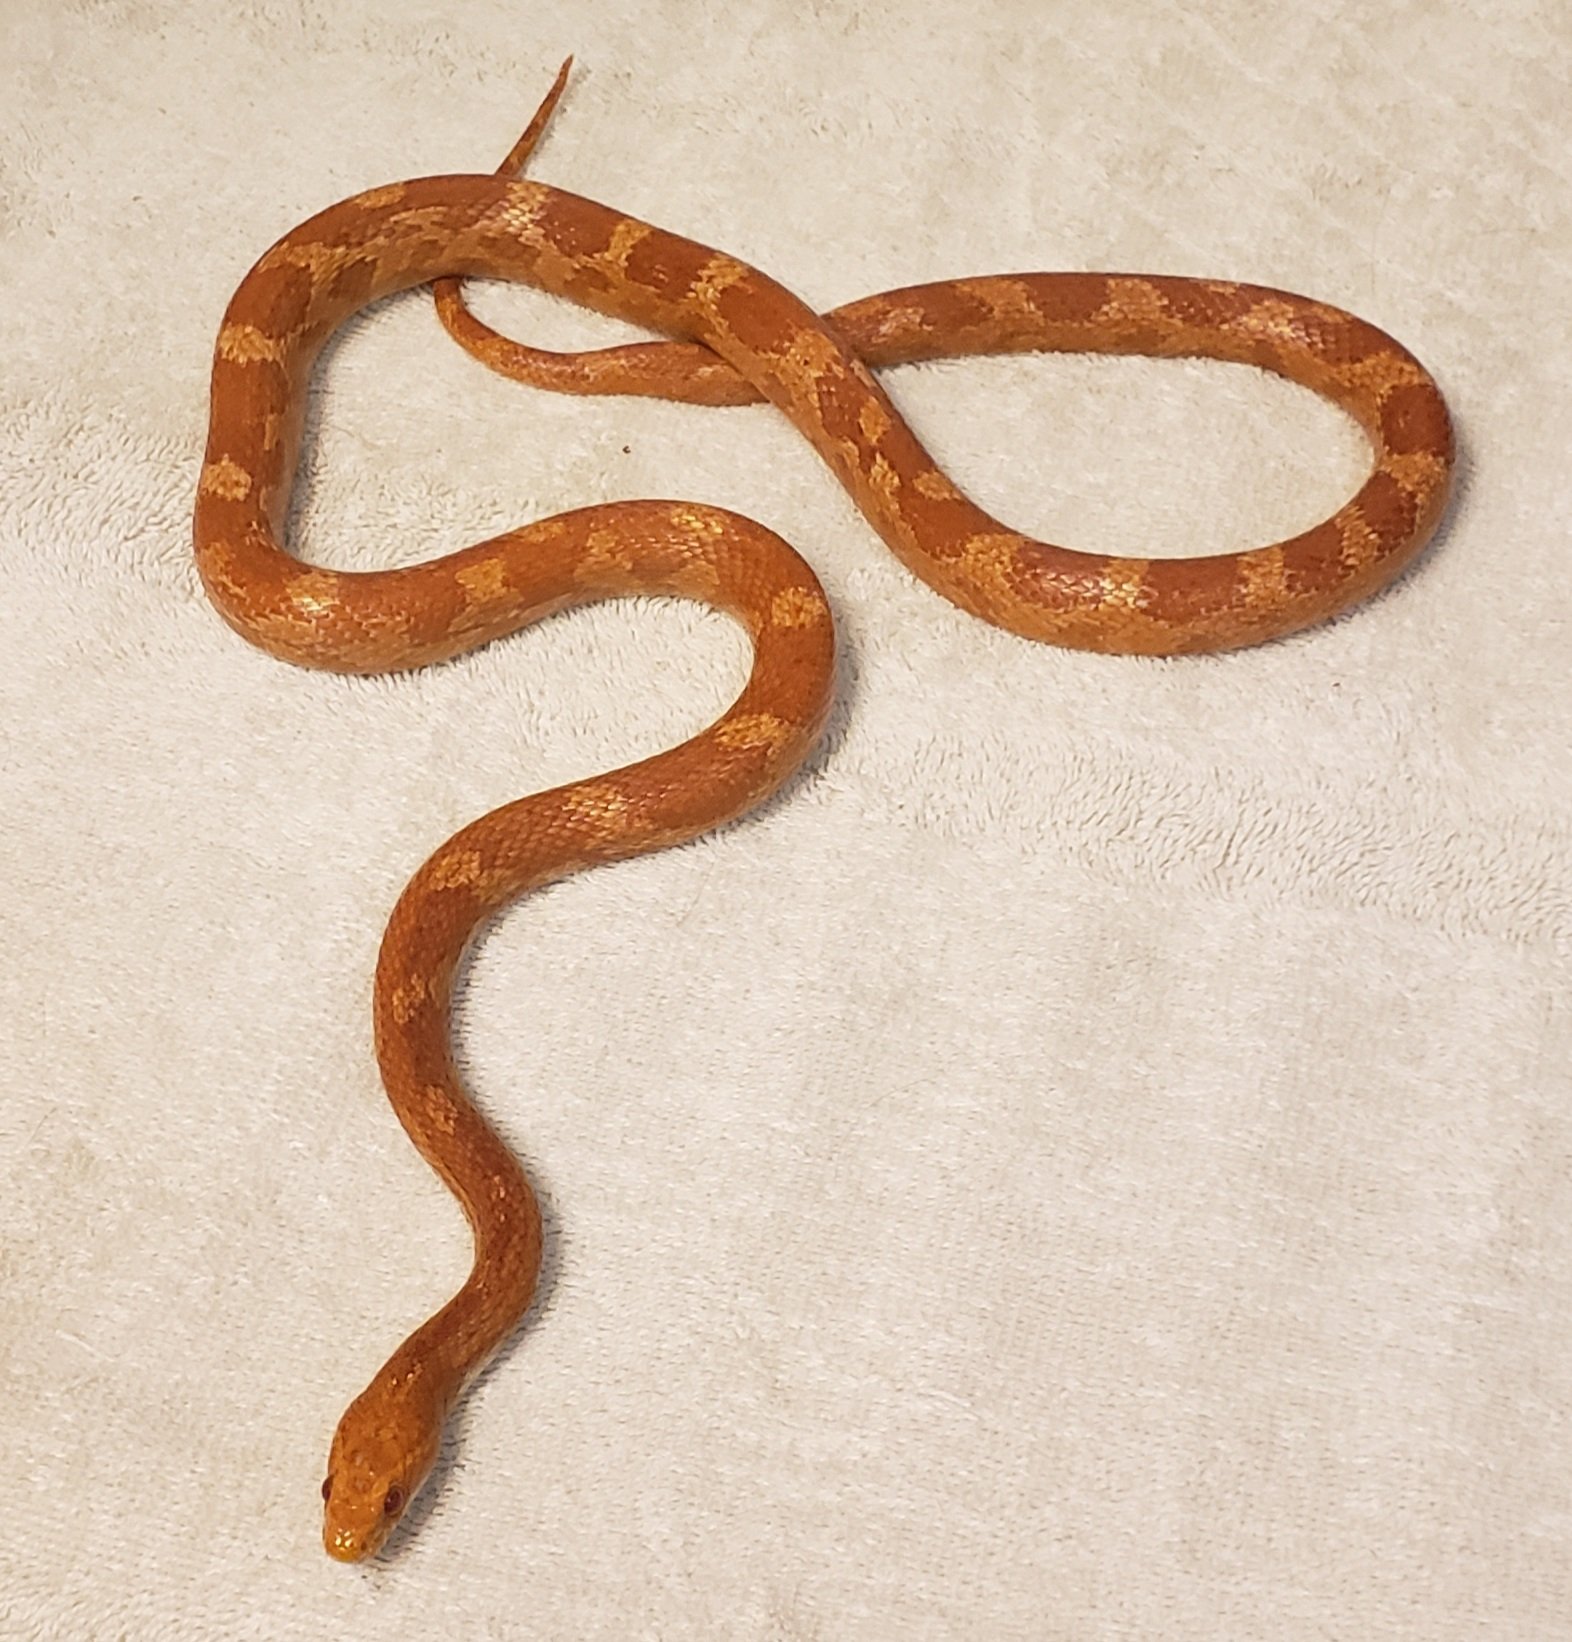 Albino Corn Snake by Piedmont Reptile Rescue